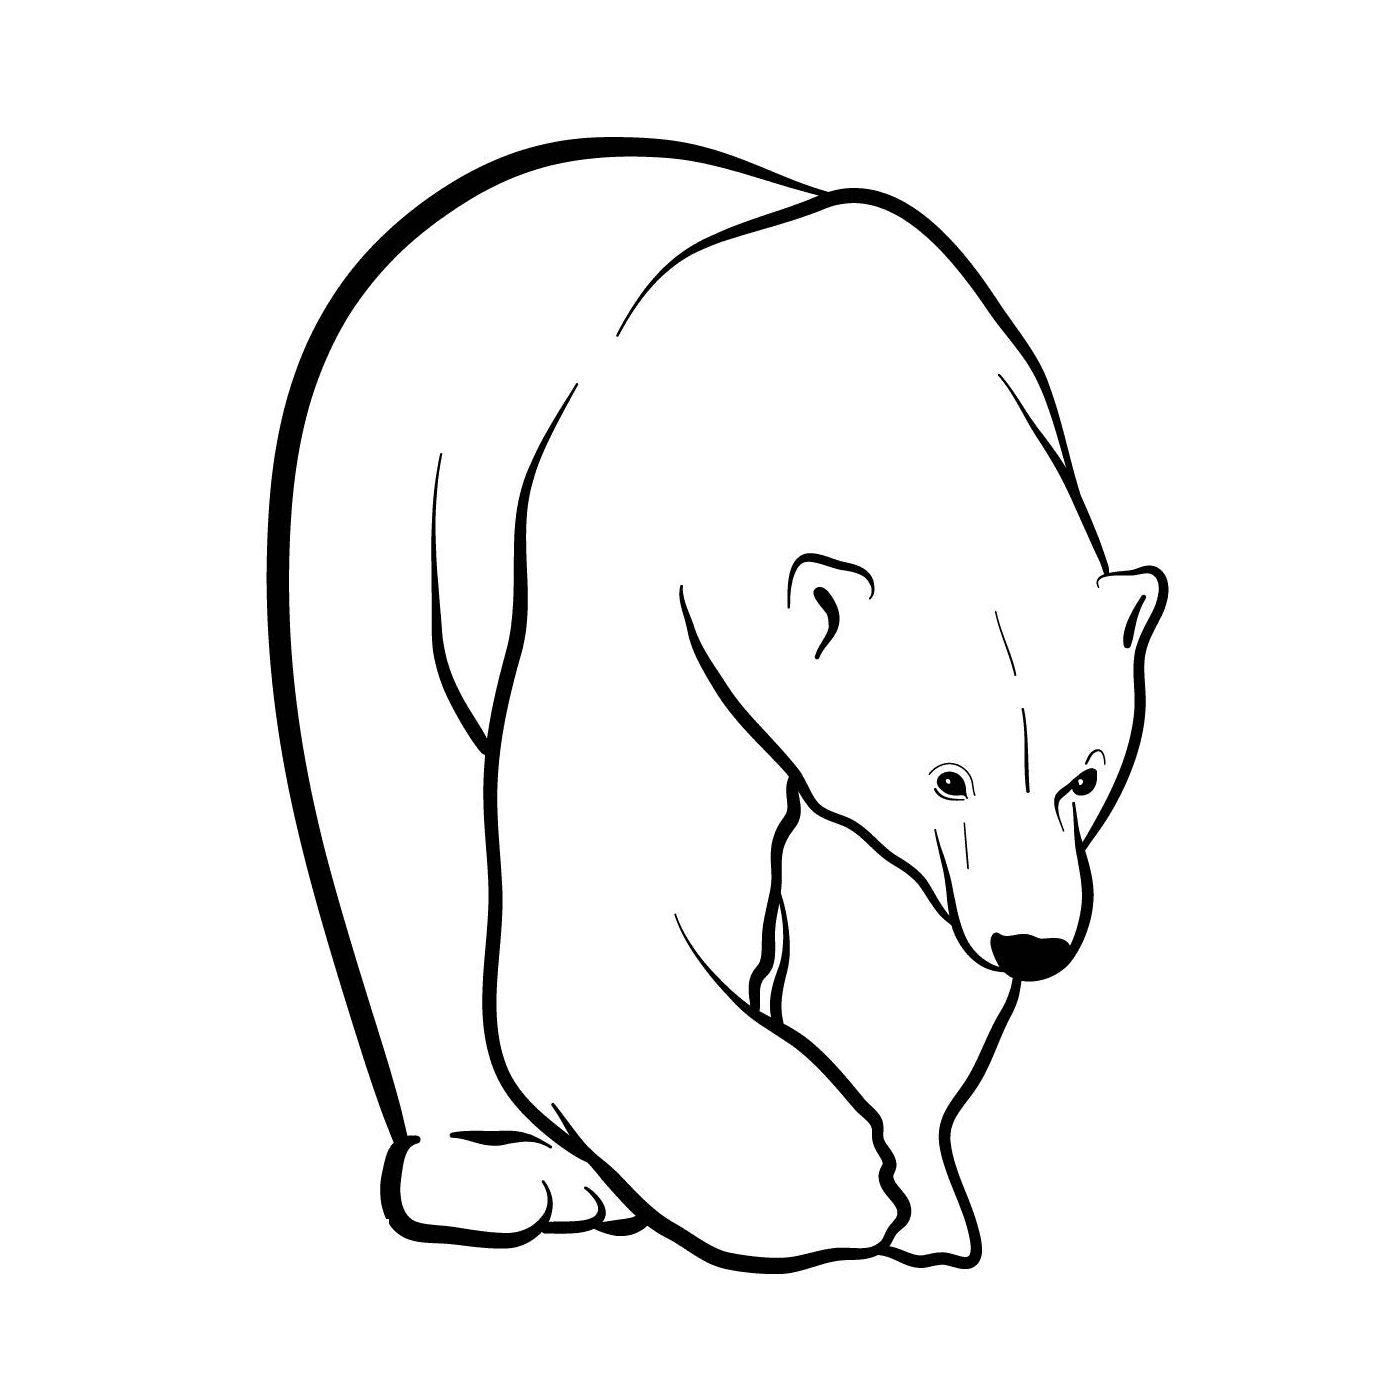   Un ours polaire 